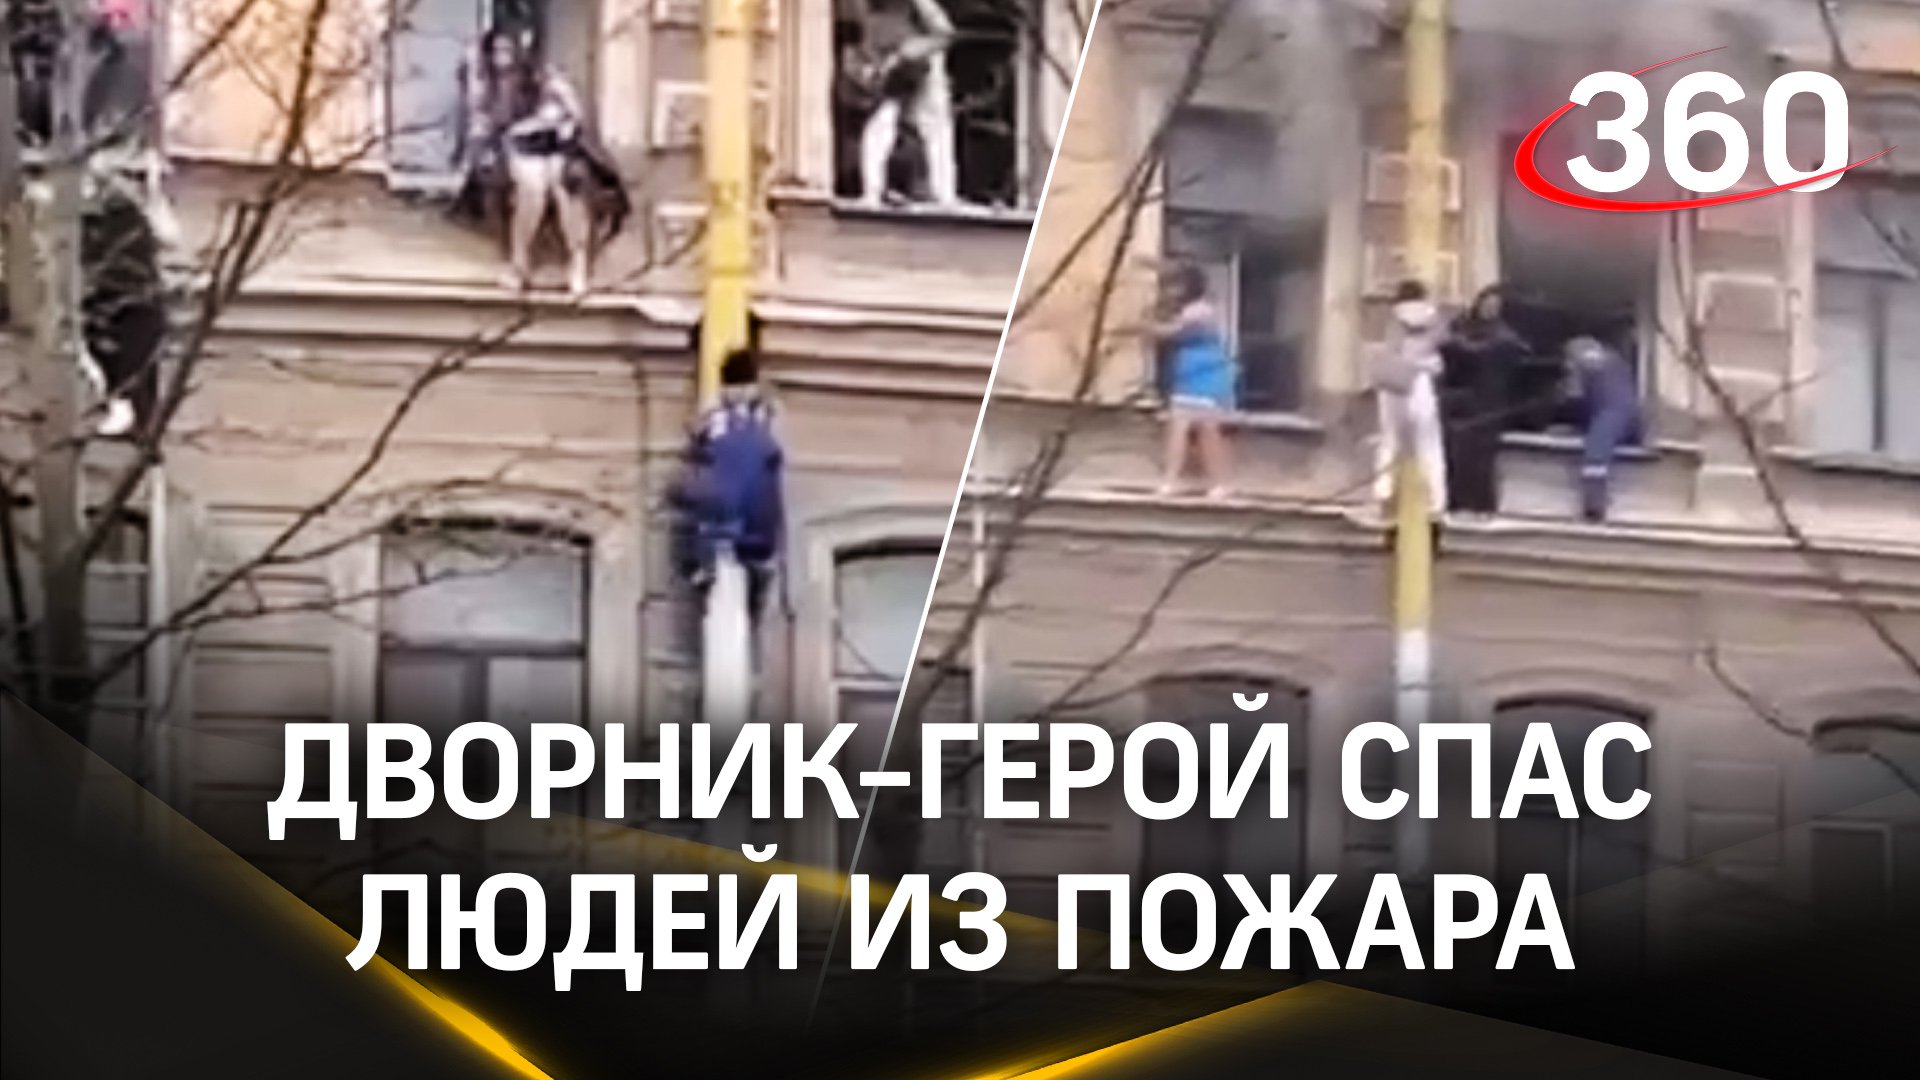 Дворник-герой спас людей из пожара в Петербурге, рискуя жизнью